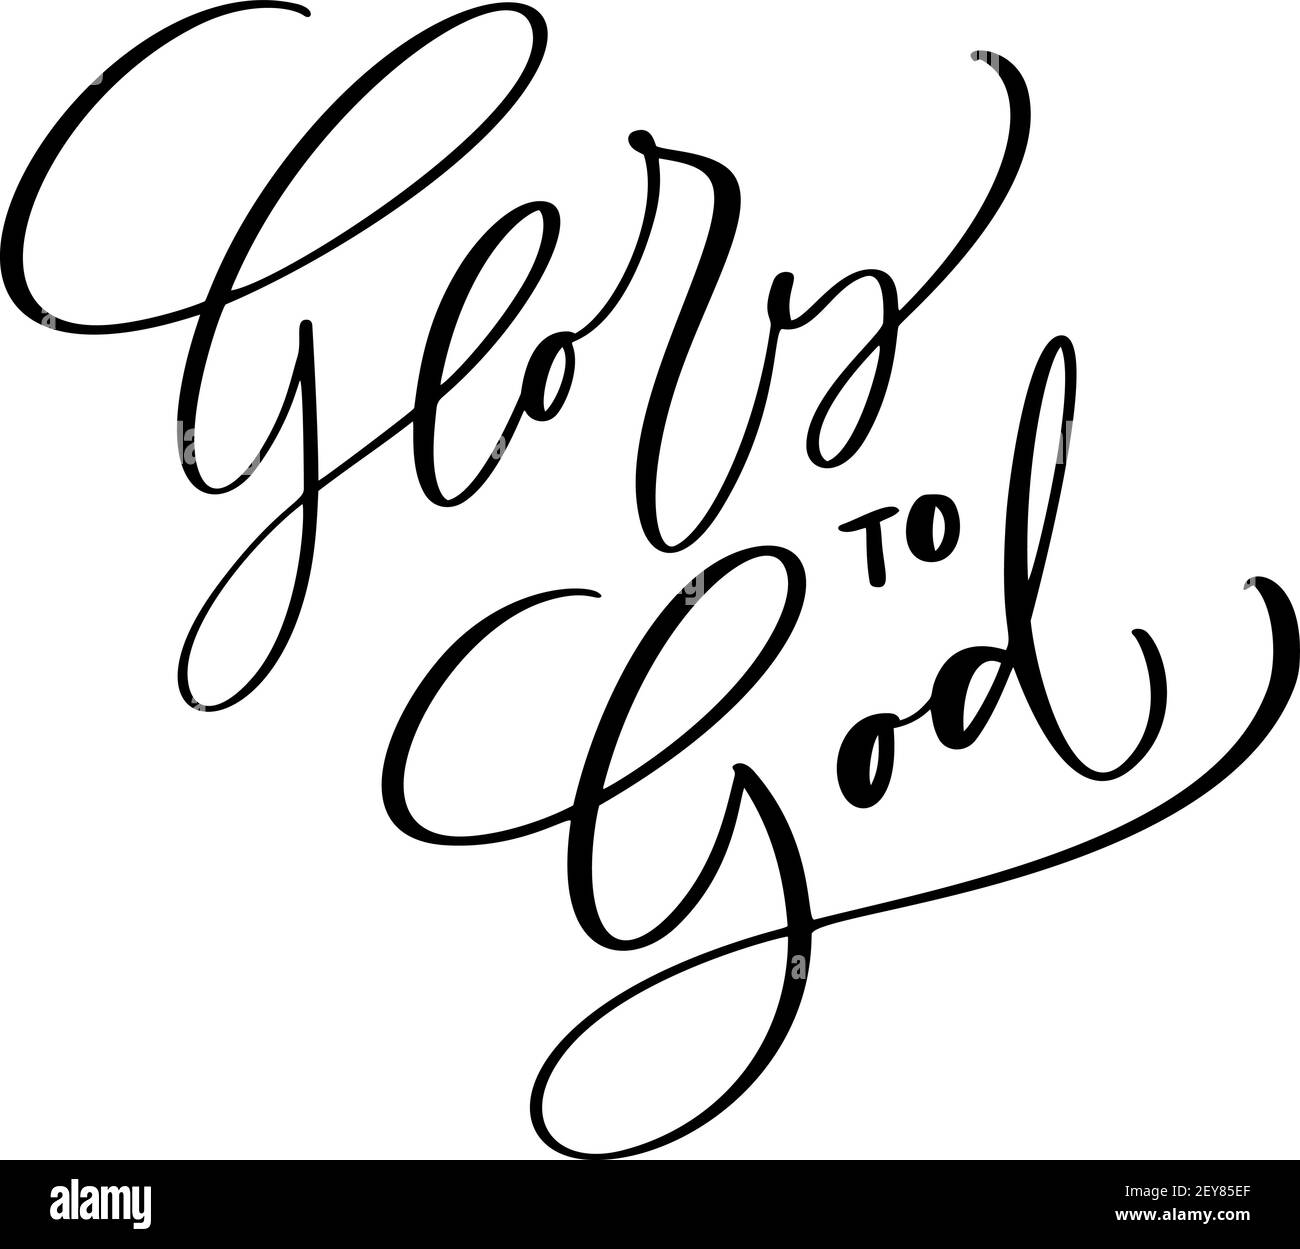 Glory to God christian testo disegnato a mano logo scritta biglietto d'auguri. Tipografia frase vettoriale calligrafia fatta a mano citazione su isolati bianco Illustrazione Vettoriale